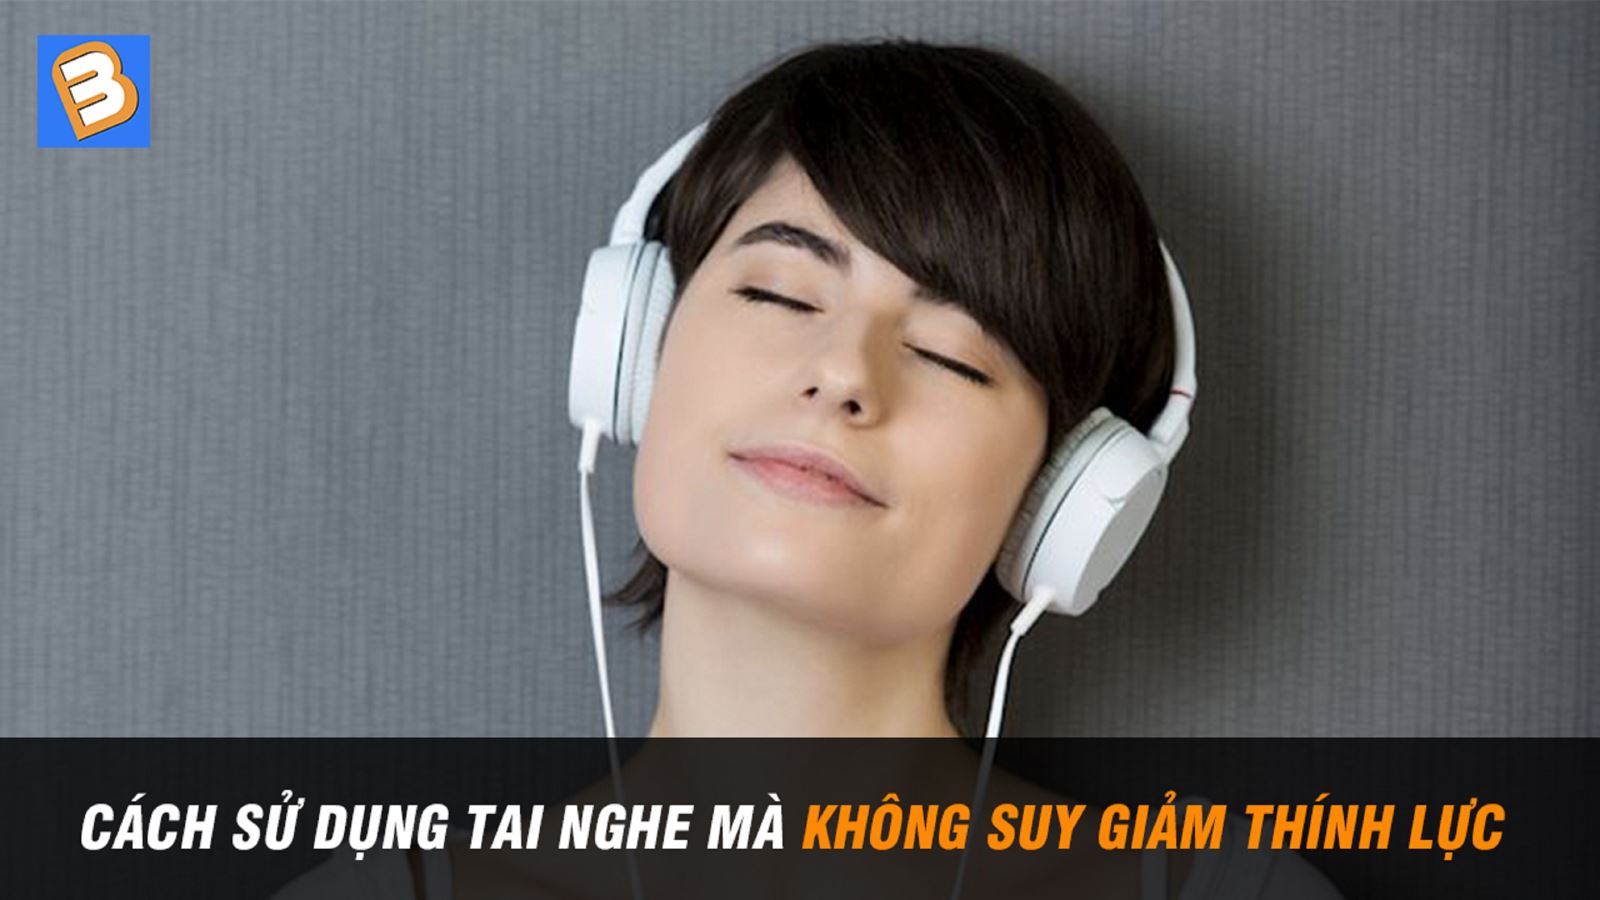 Cách sử dụng tai nghe mà không suy giảm thính lực